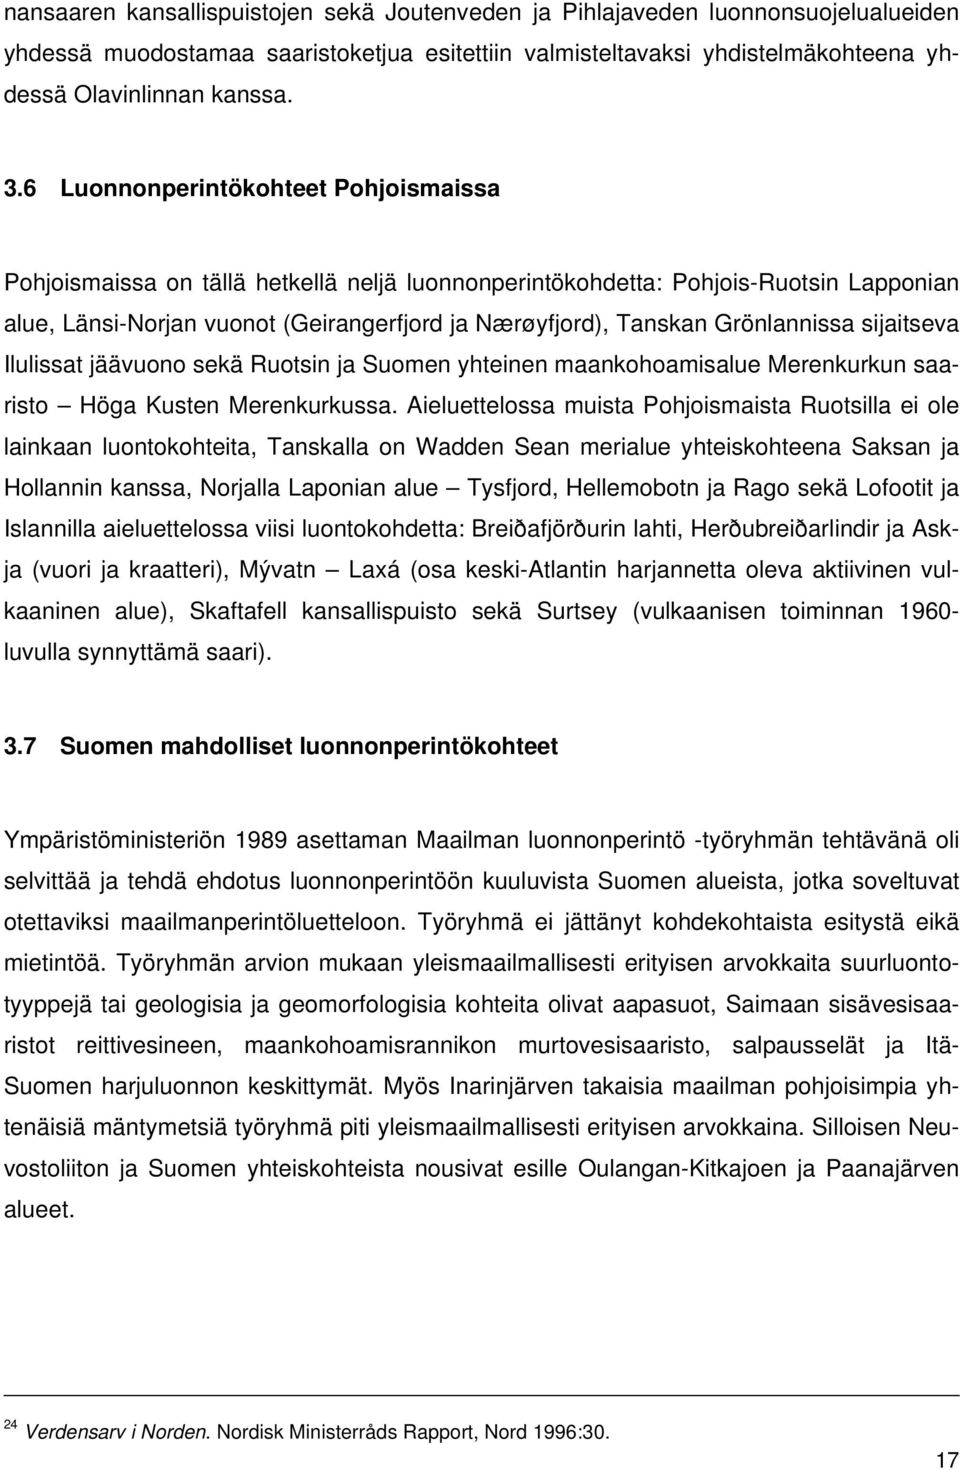 Grönlannissa sijaitseva Ilulissat jäävuono sekä Ruotsin ja Suomen yhteinen maankohoamisalue Merenkurkun saaristo Höga Kusten Merenkurkussa.